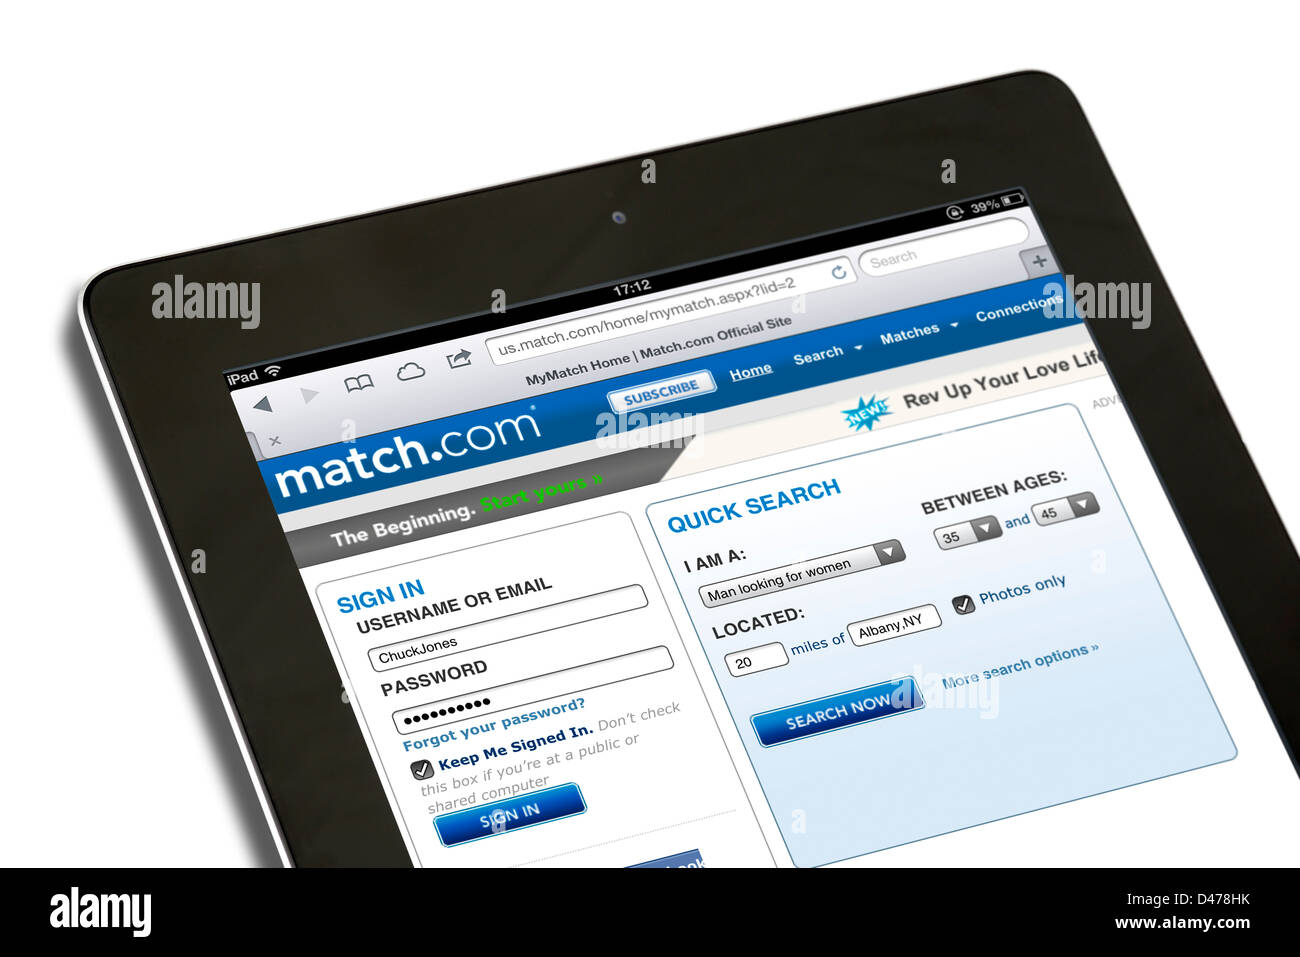 Usa match.com dating site